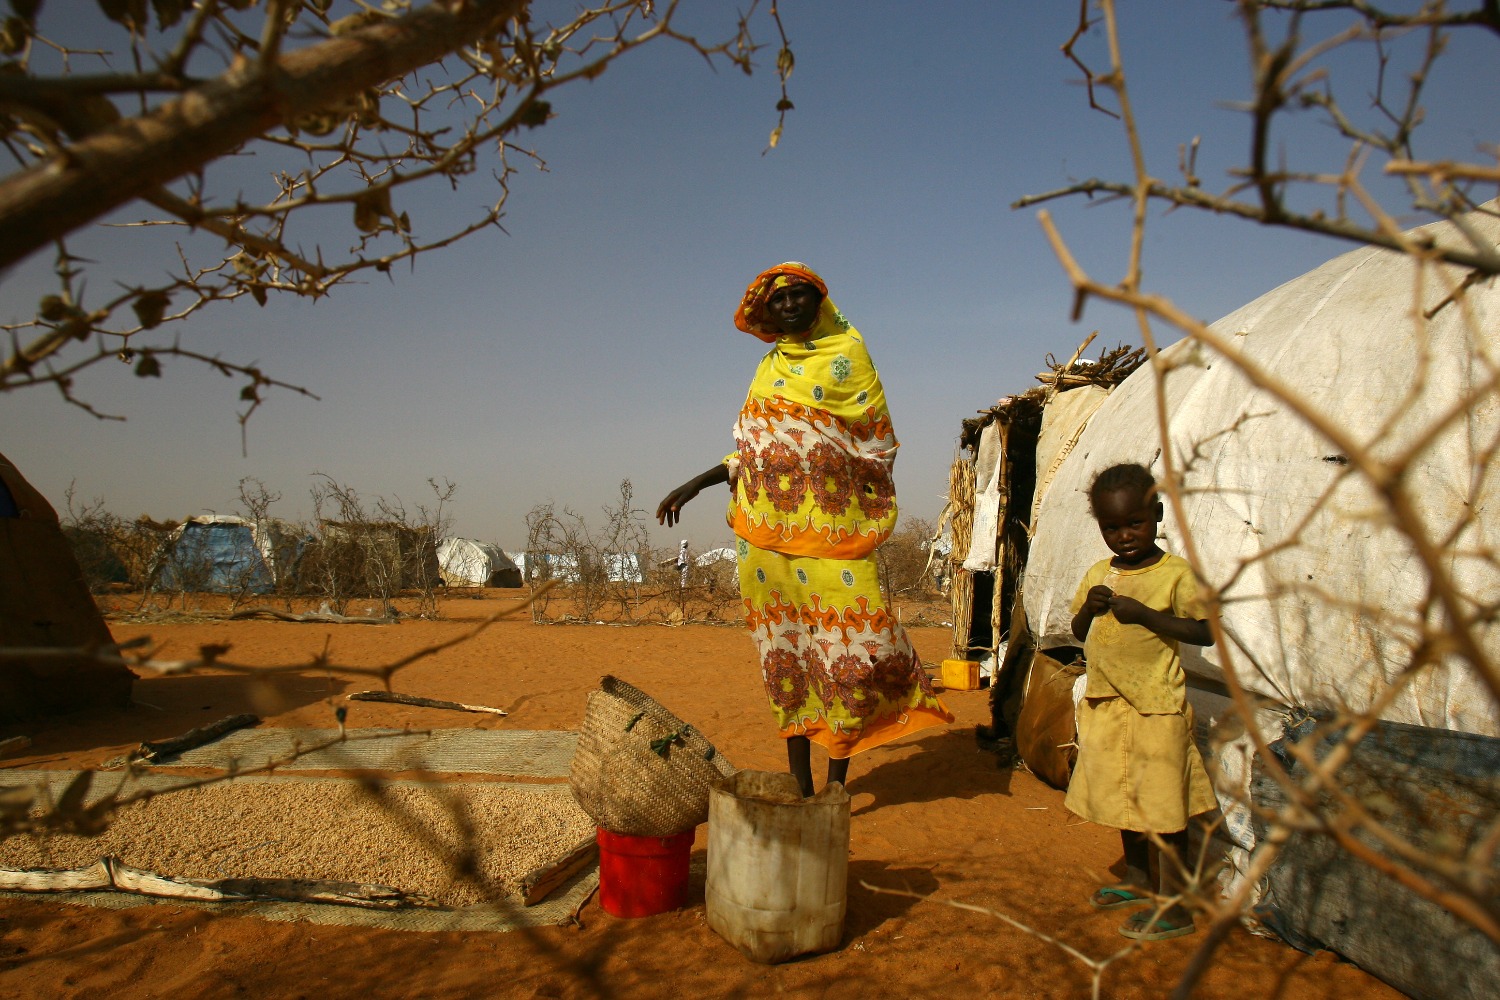 «Детей свалили в кучу и расстреляли». Правозащитники обнародовали свидетельства геноцида в Судане.